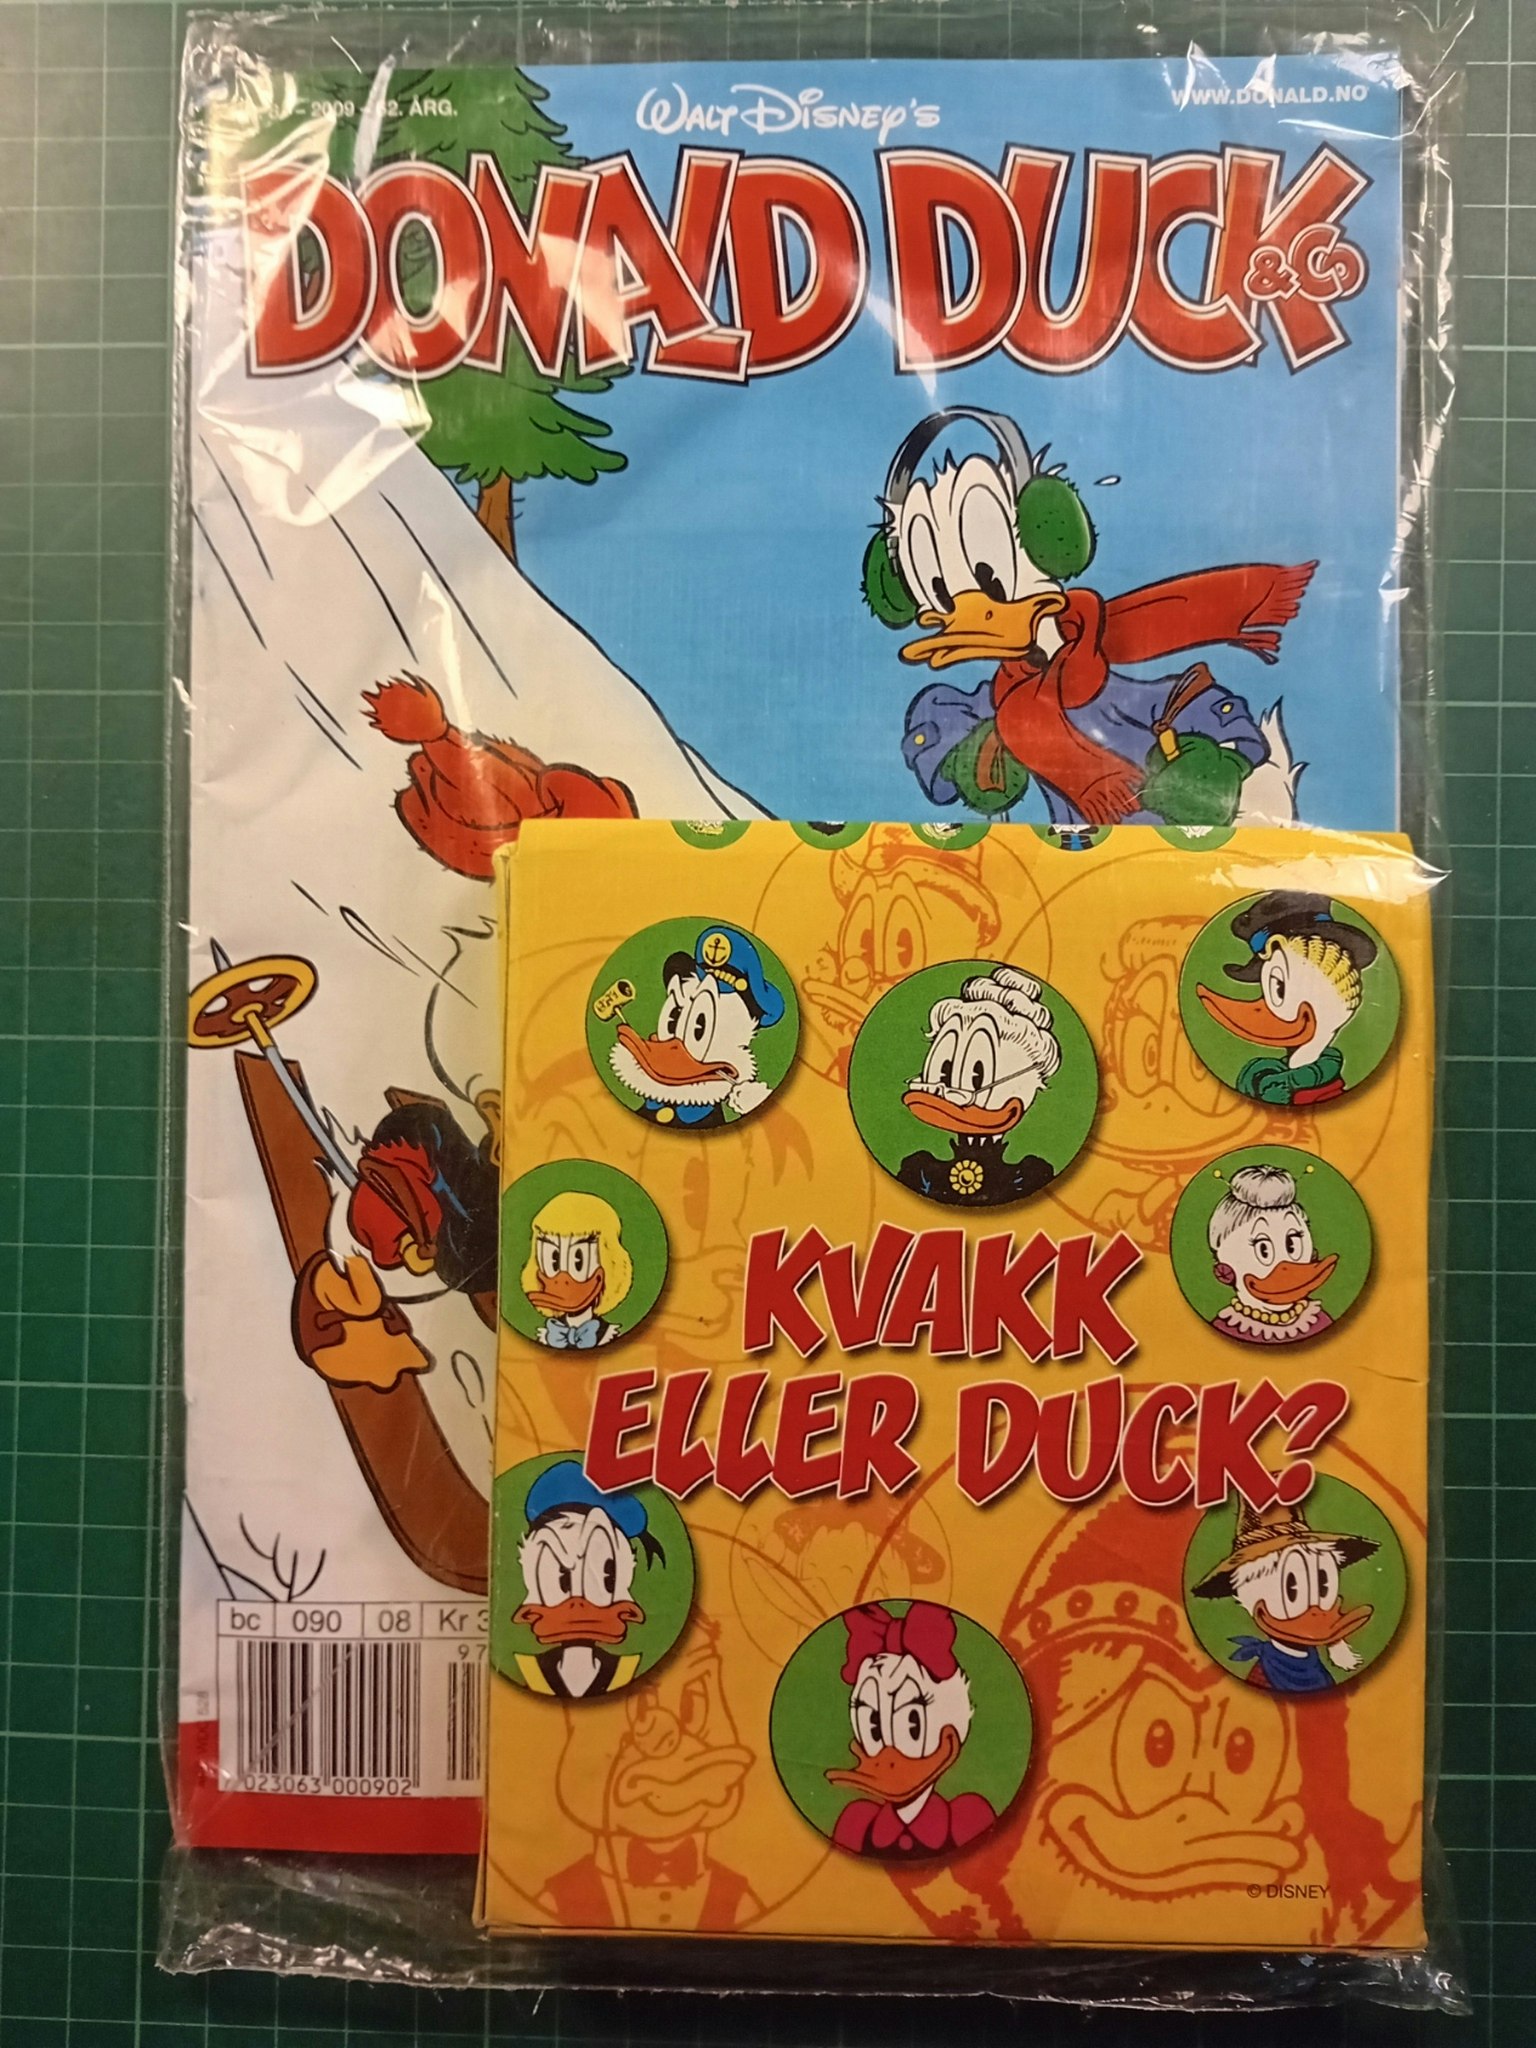 Donald Duck & Co 2009 - 07 Forseglet m/kvakk eller Duck